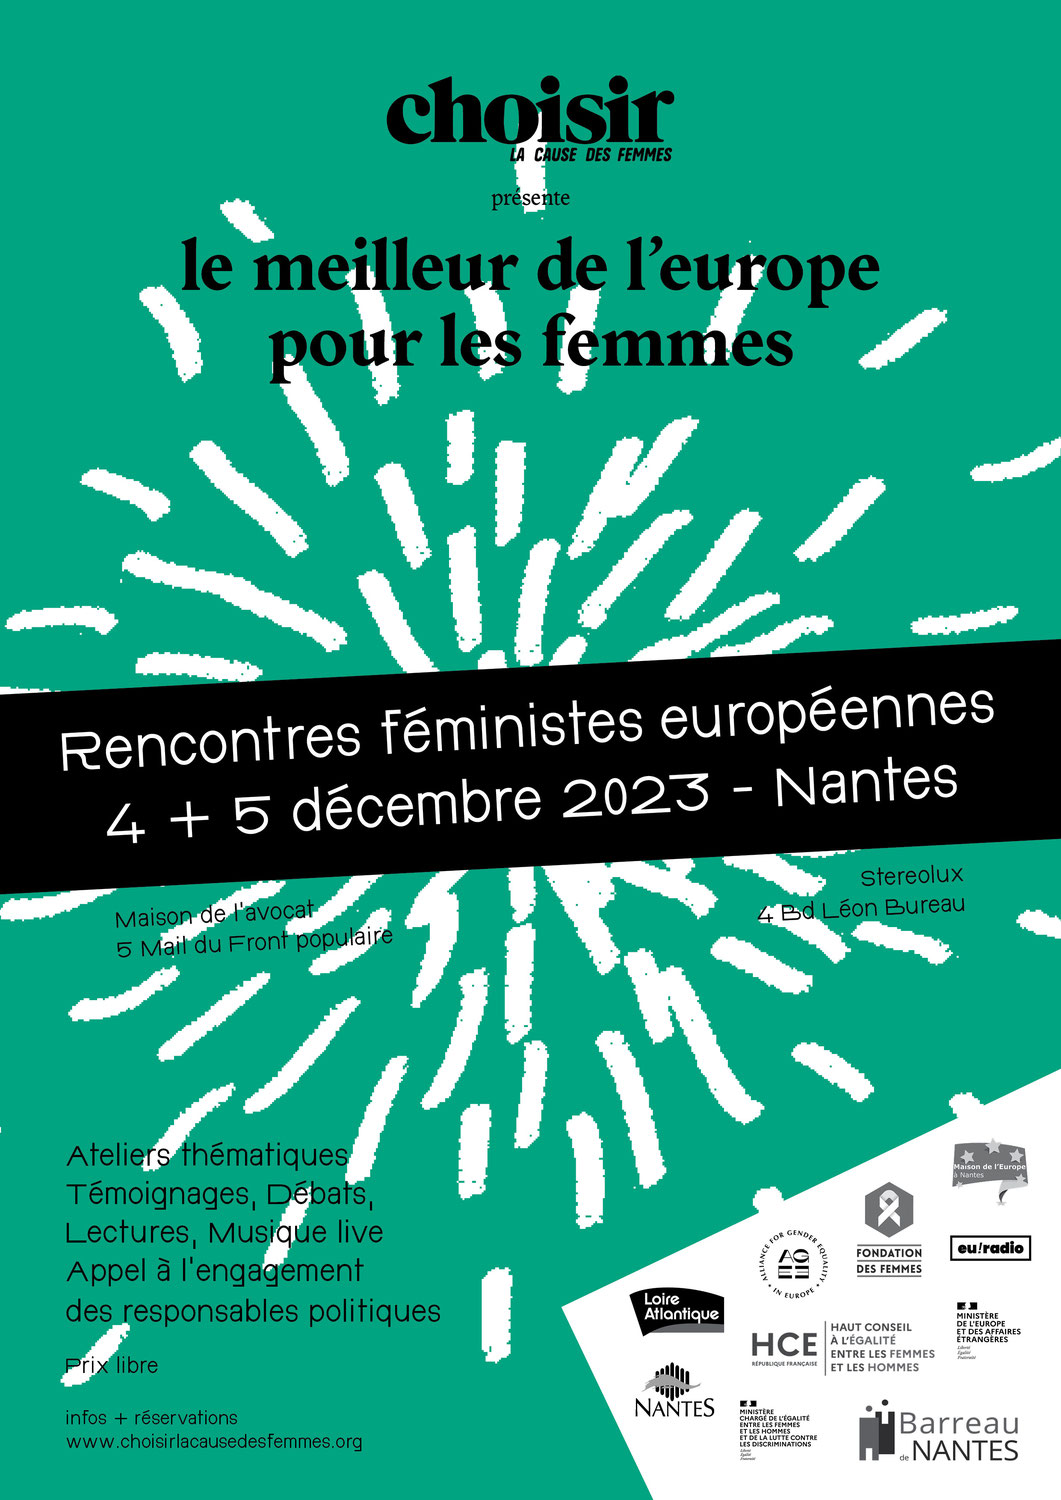 Rencontres féministes européennes des 4 et 5 décembre 2023 à Nantes : La billetterie est ouverte !